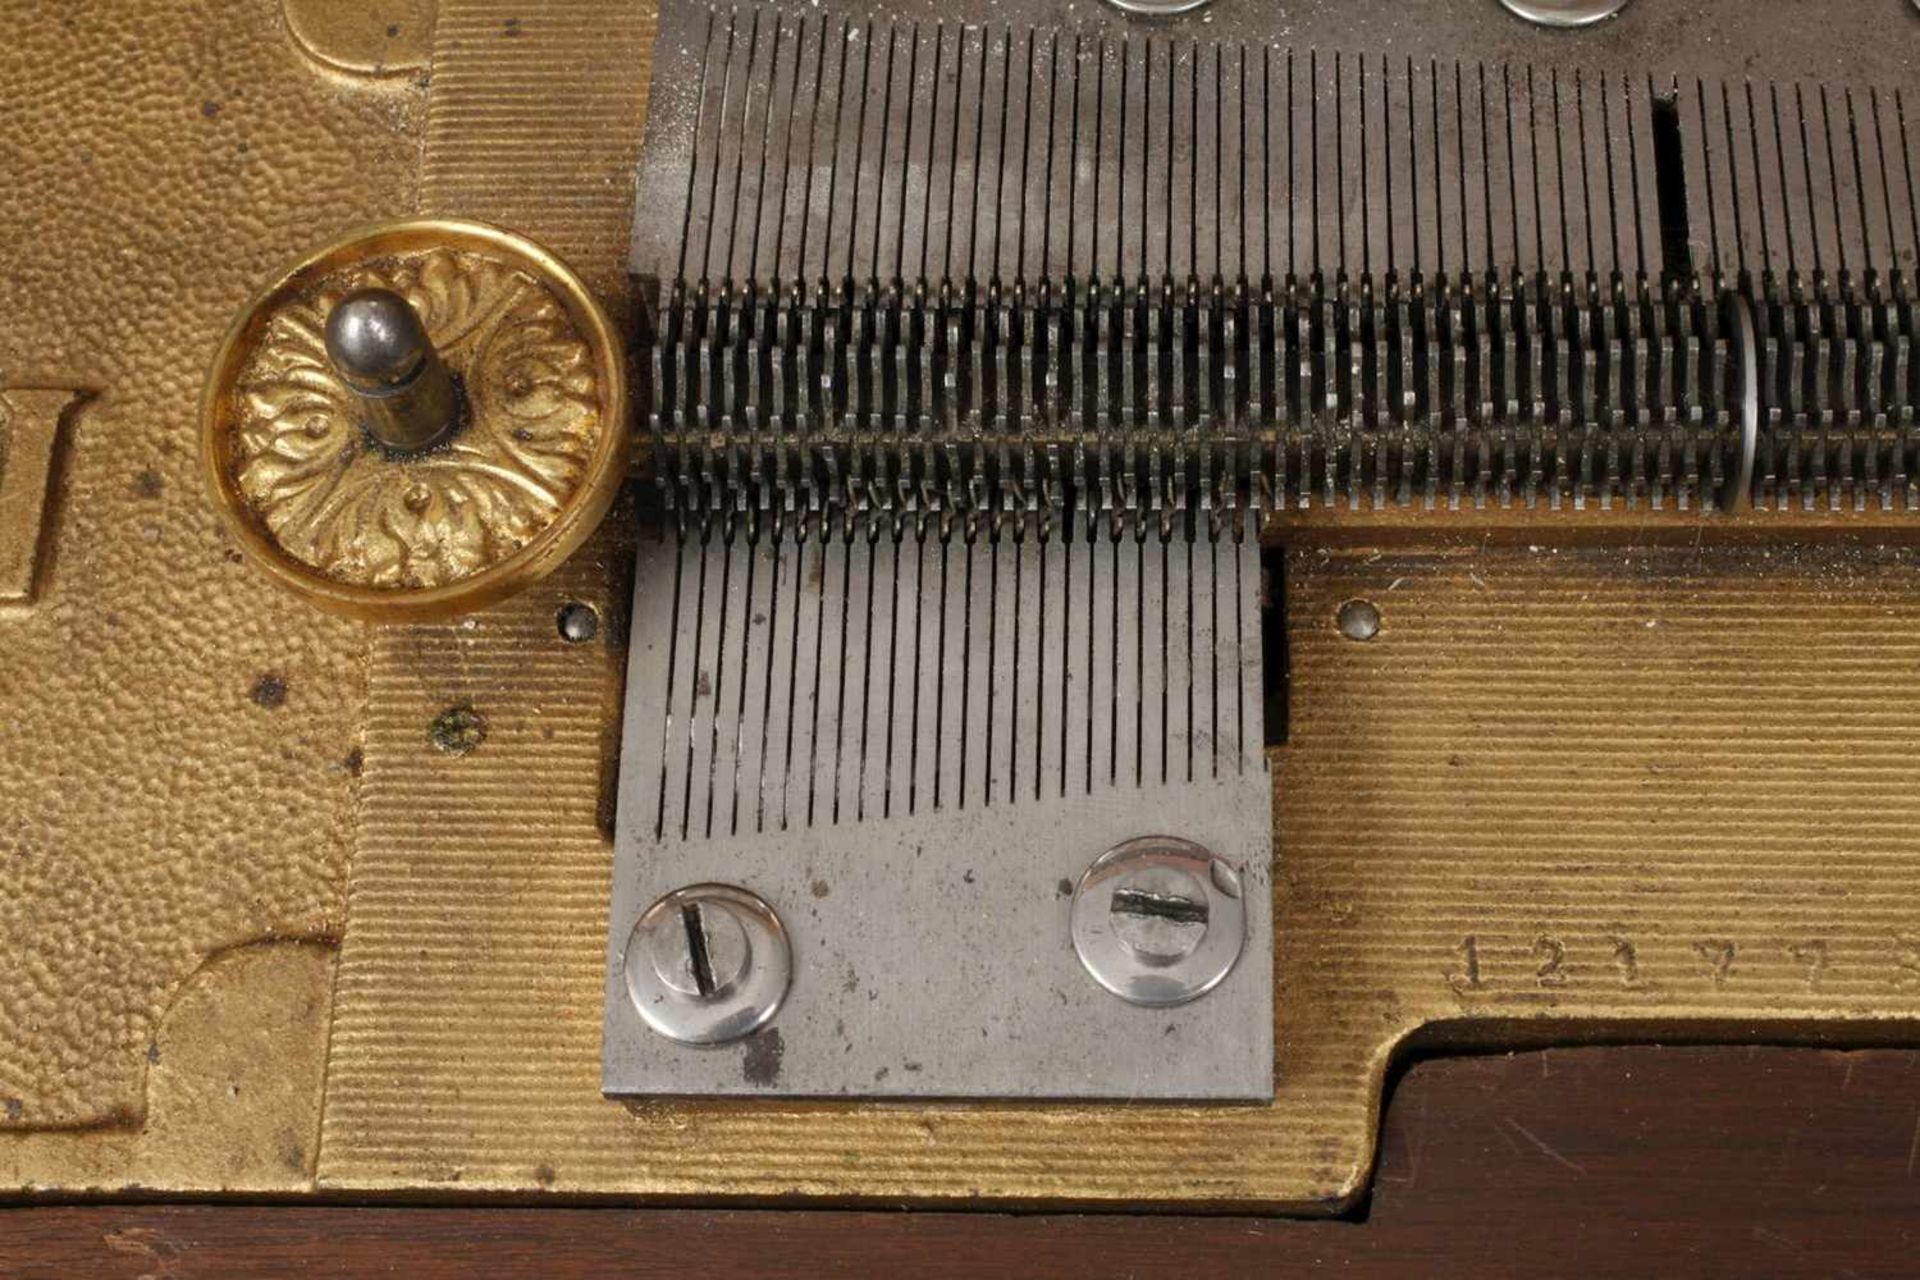 Große Plattenspieldose Polyphonum 1890, gemarkt, Seriennummer 121998?, palisanderfurniertes Gehäuse, - Bild 3 aus 6